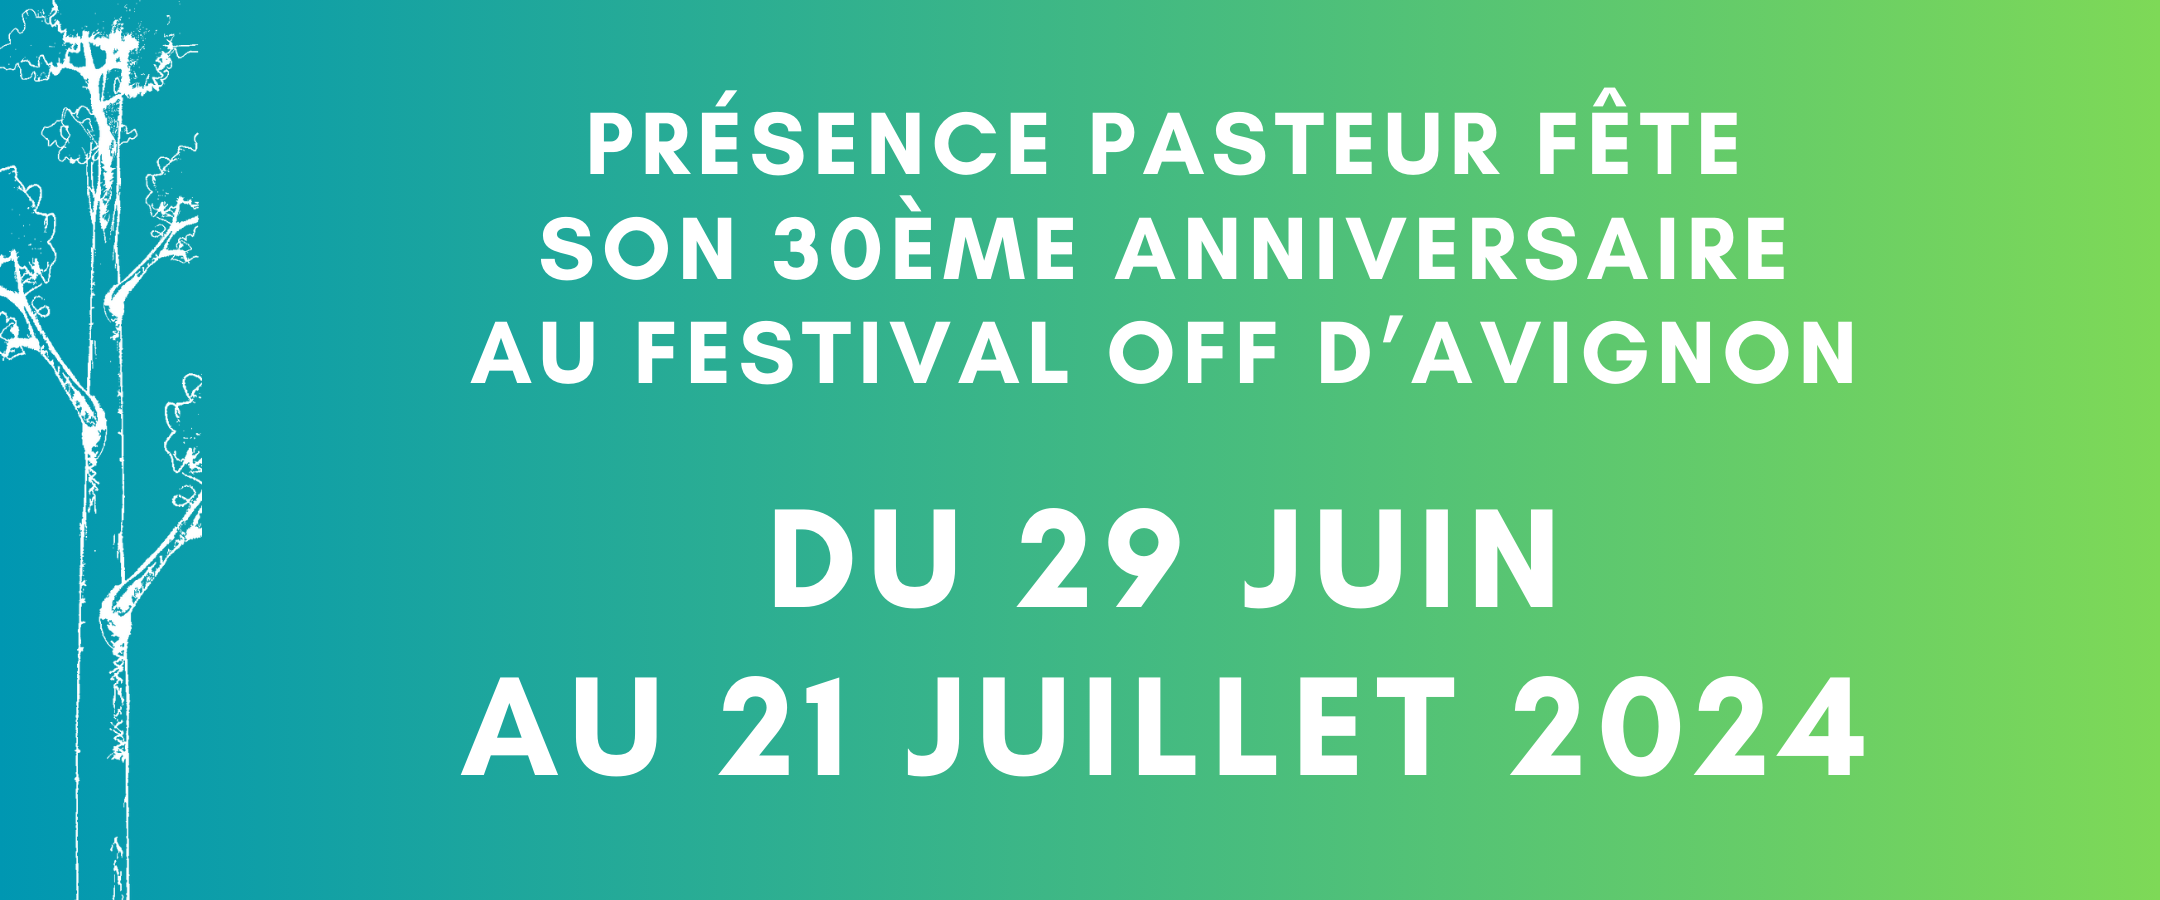 Présence Pasteur fête son 30ème anniversaire au Festival Off d'Avignon | Du 29 juin au 21 juillet 2024